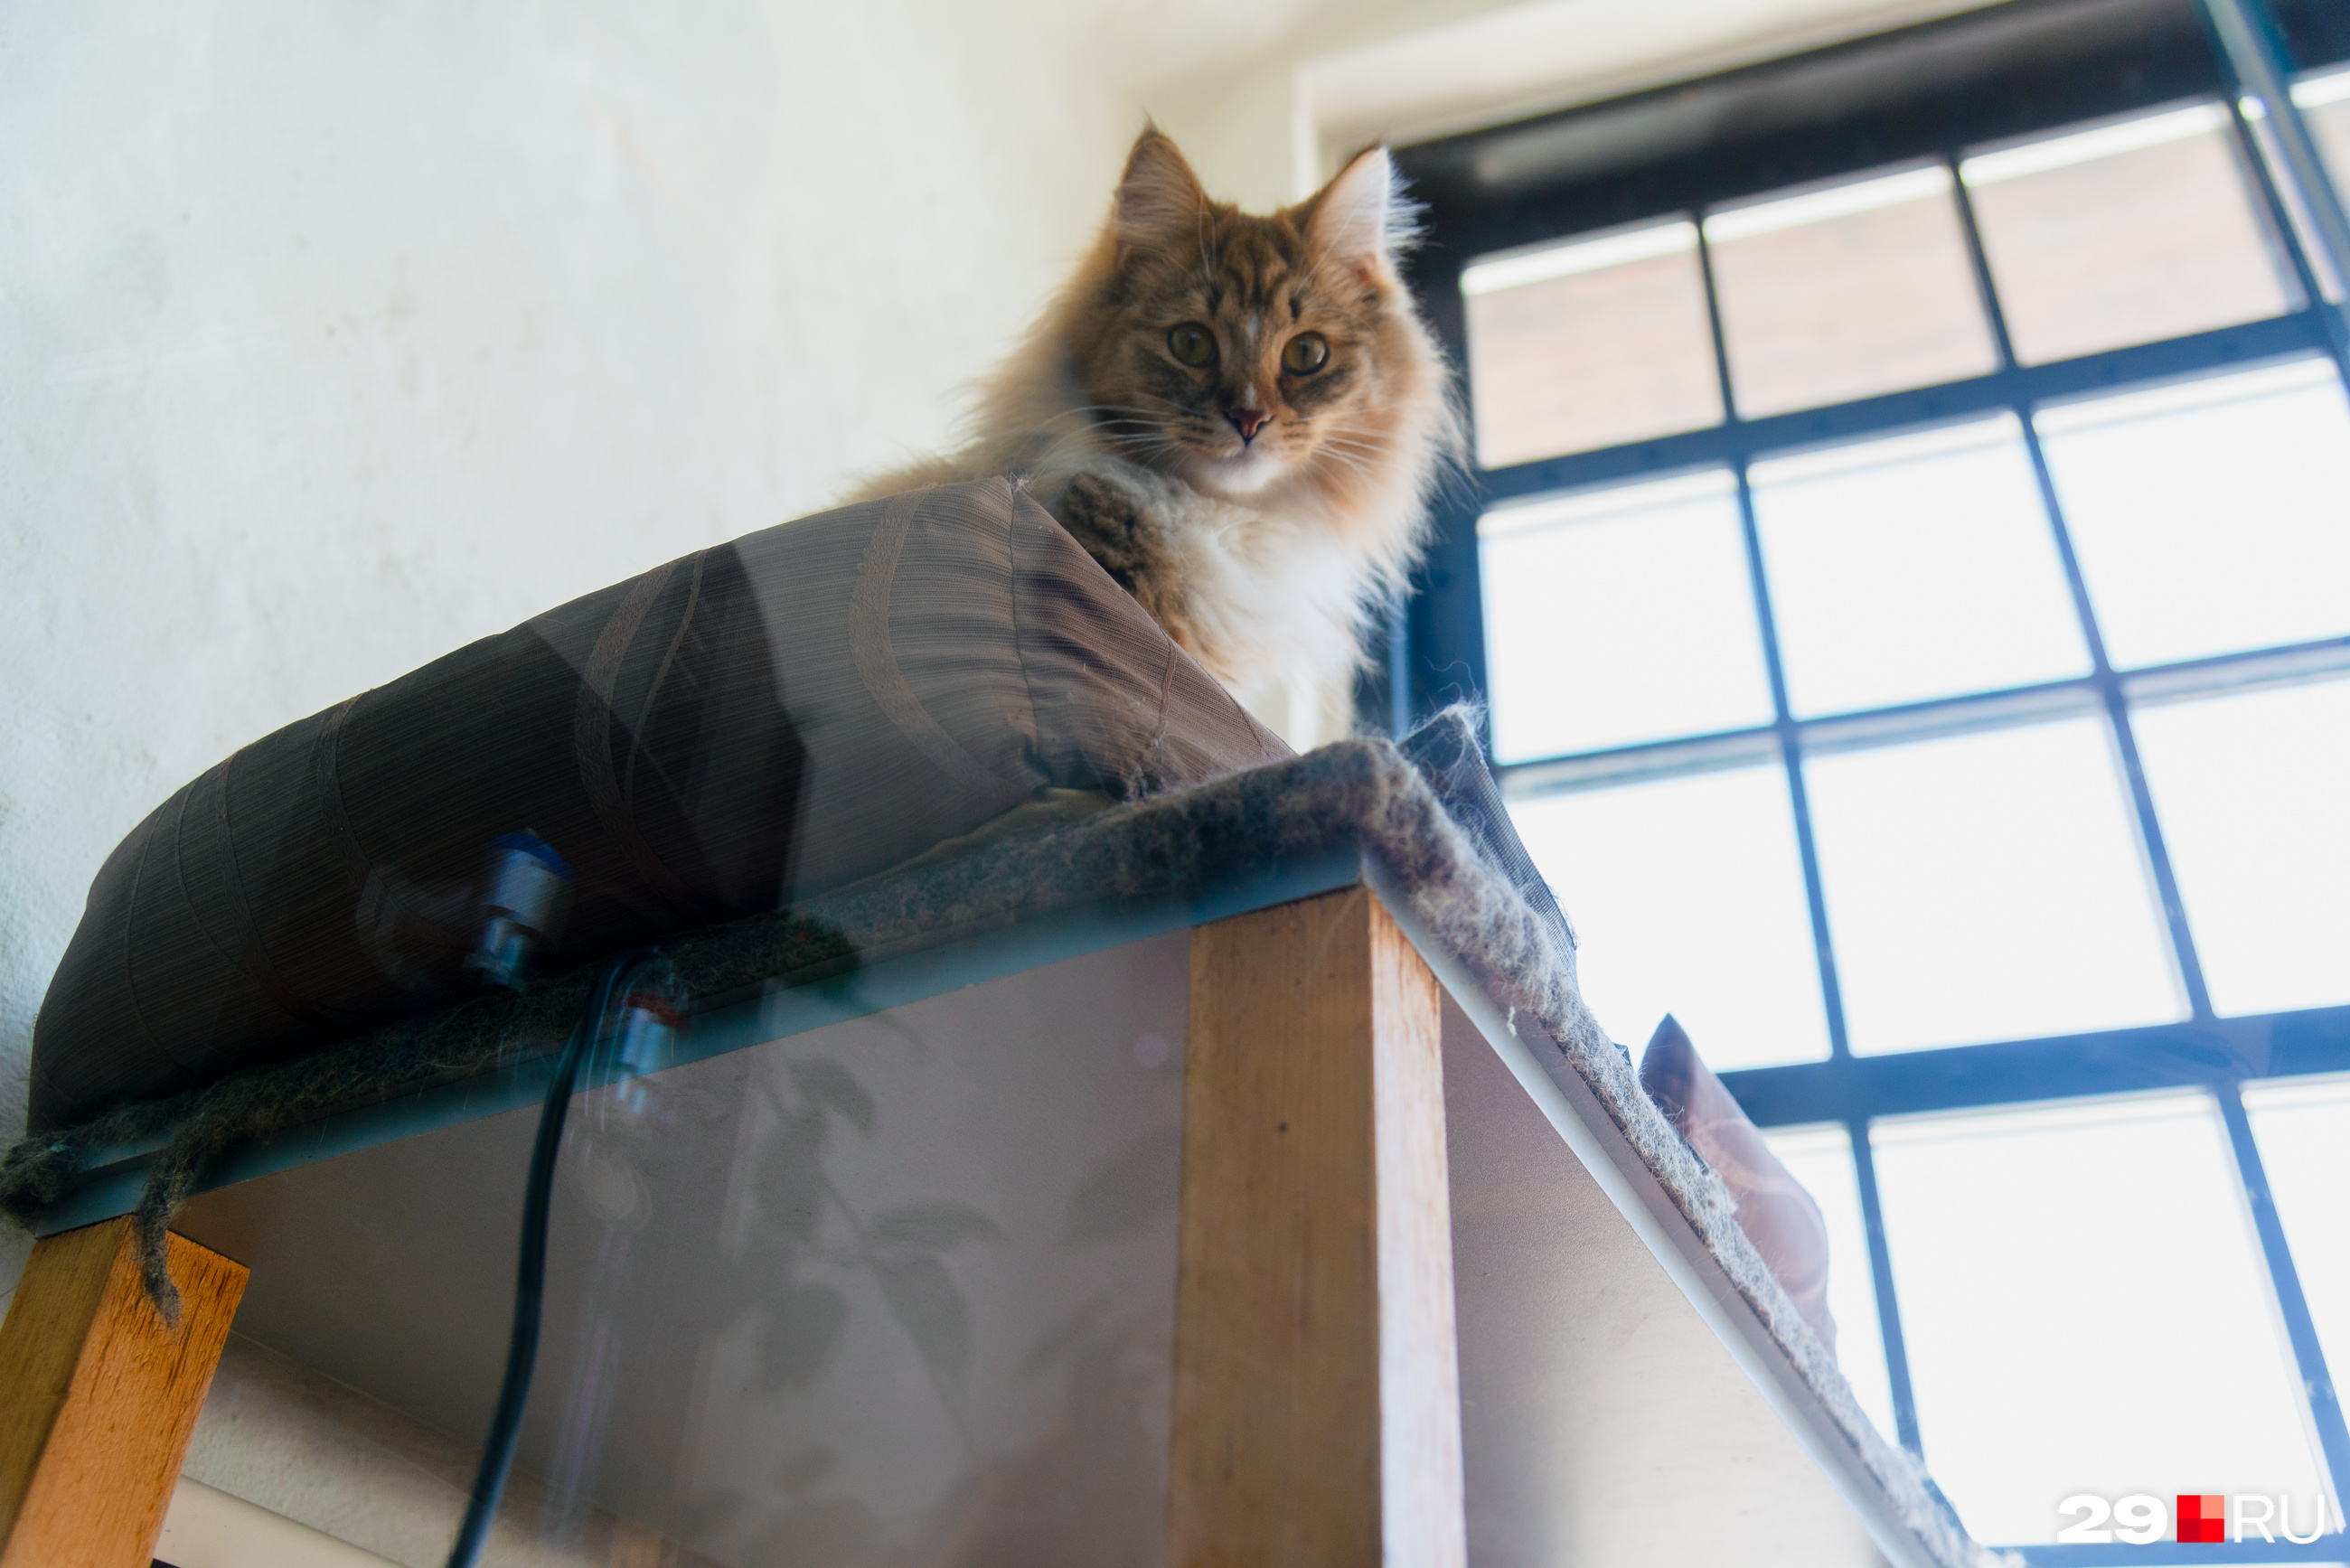 Впервые коты в краеведческом музее появились в 2014 году. С тех пор появилась традиция: каждый котик, который приходит в Гостиный двор, остается здесь жить